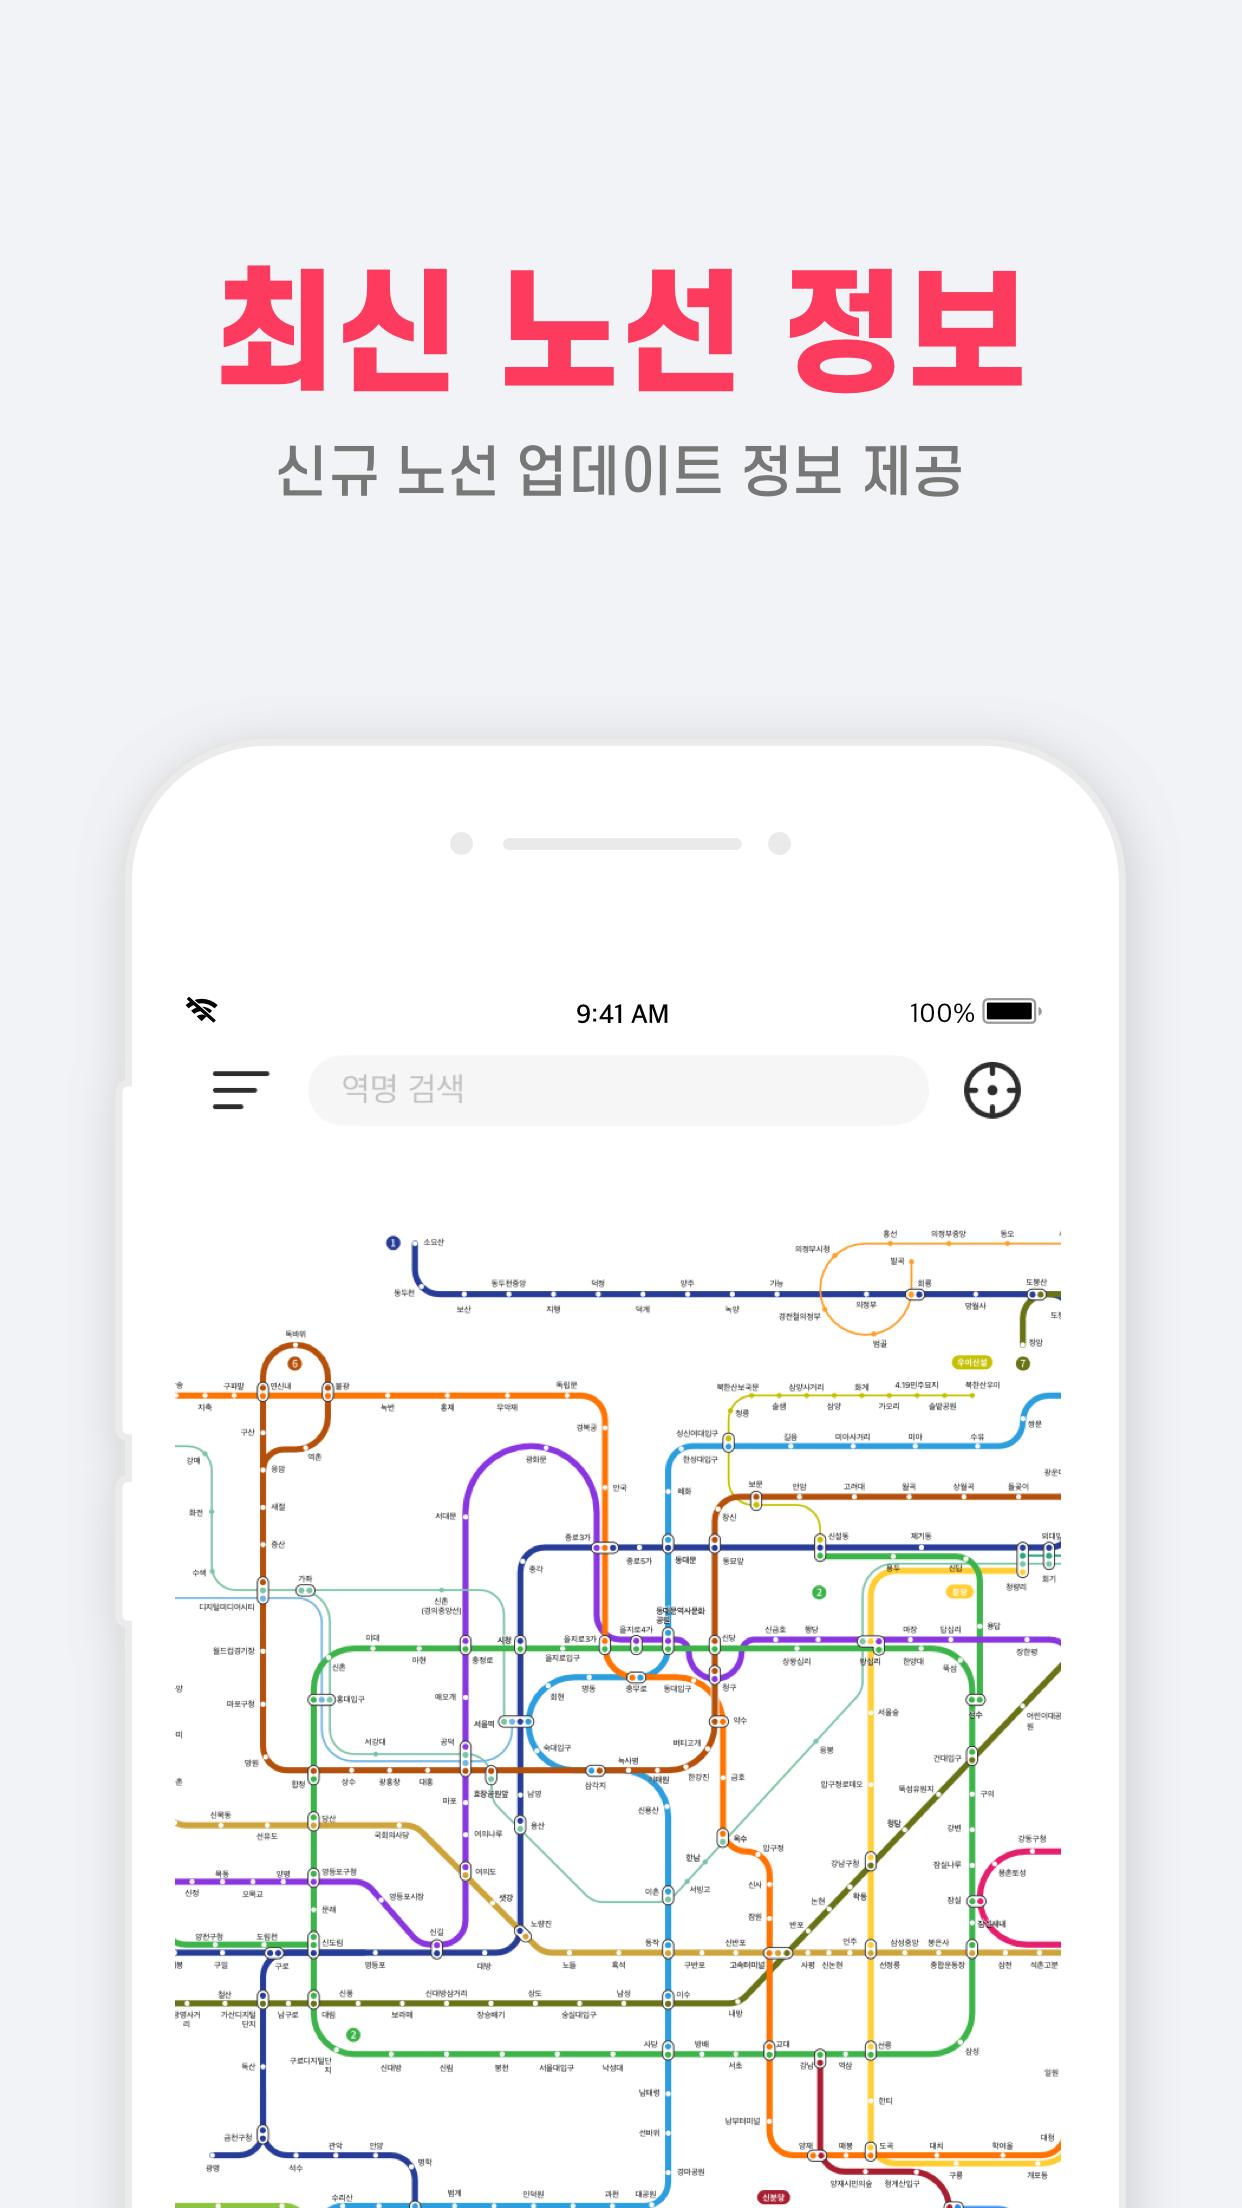 트리파이 지하철 - 광고없는 오프라인 지하철 길찾기 지도 네비게이션(+노선도 기차 시간표)